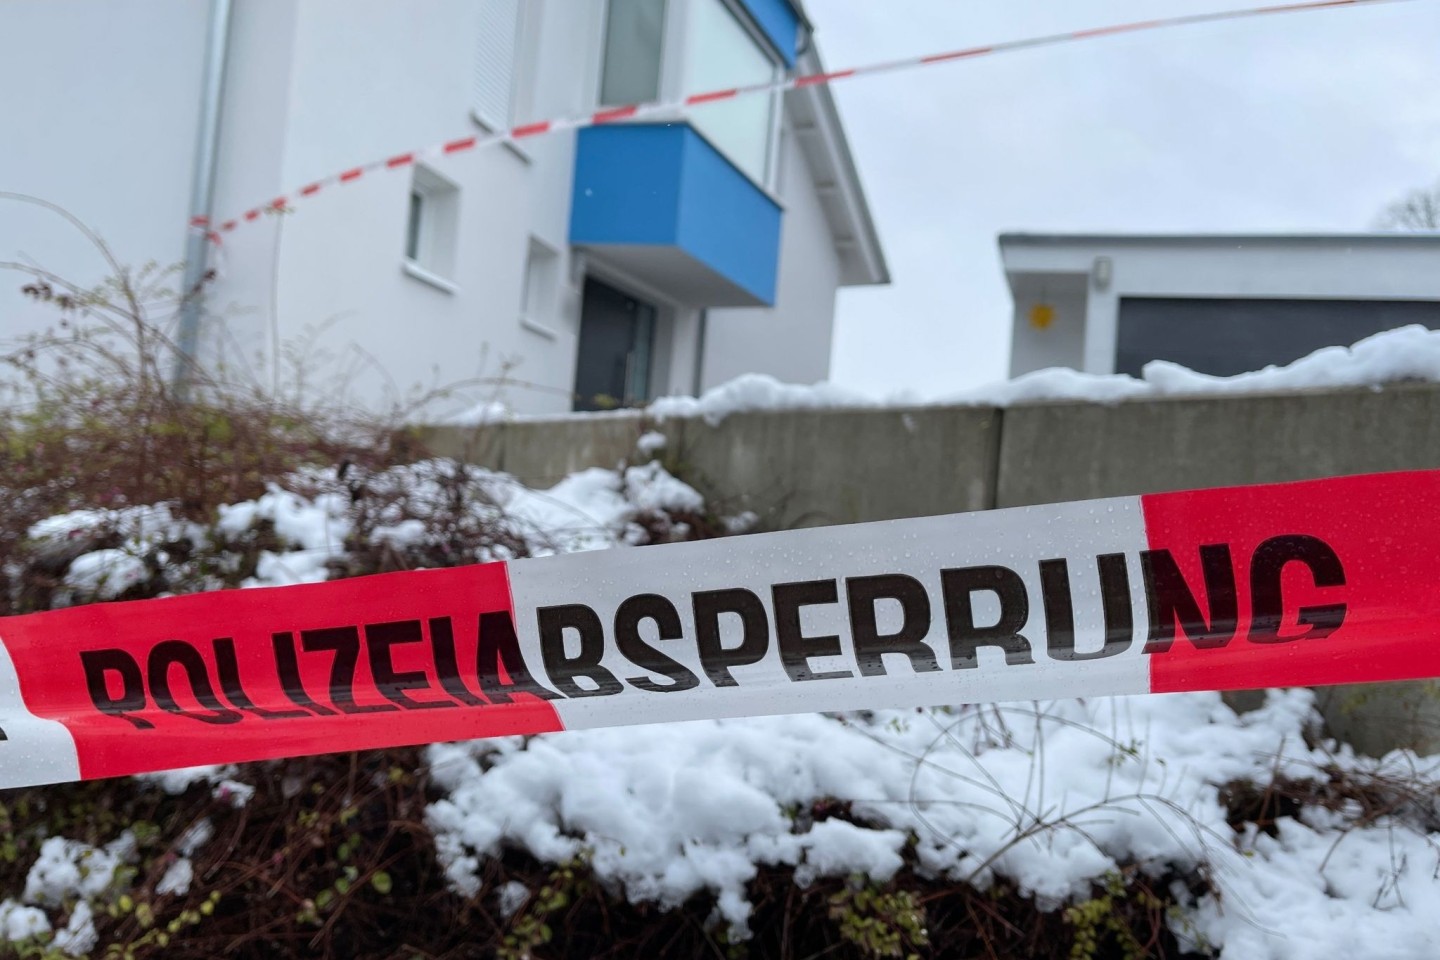 Absperrband der Polizei vor dem Einfamilienhaus in Mistelbach, in dem die Opfer gefunden wurden.